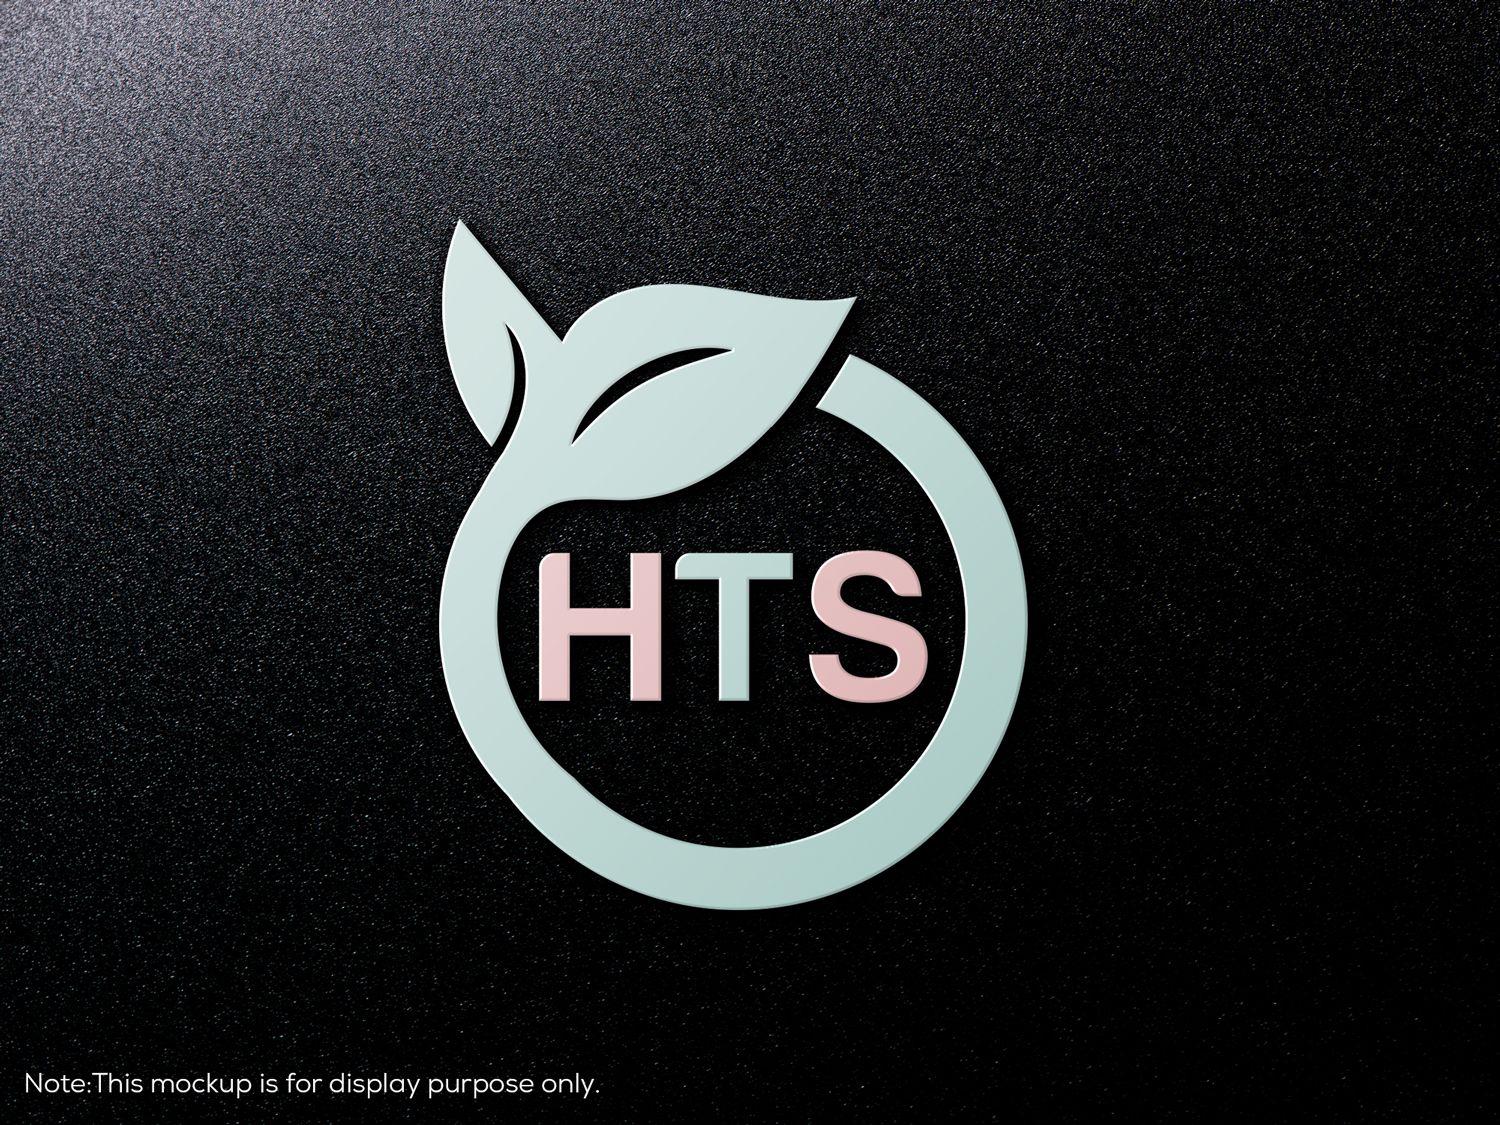 HTS Logo - Modern, Feminine, Healthcare Logo Design for HTS or Heal(thy) Self